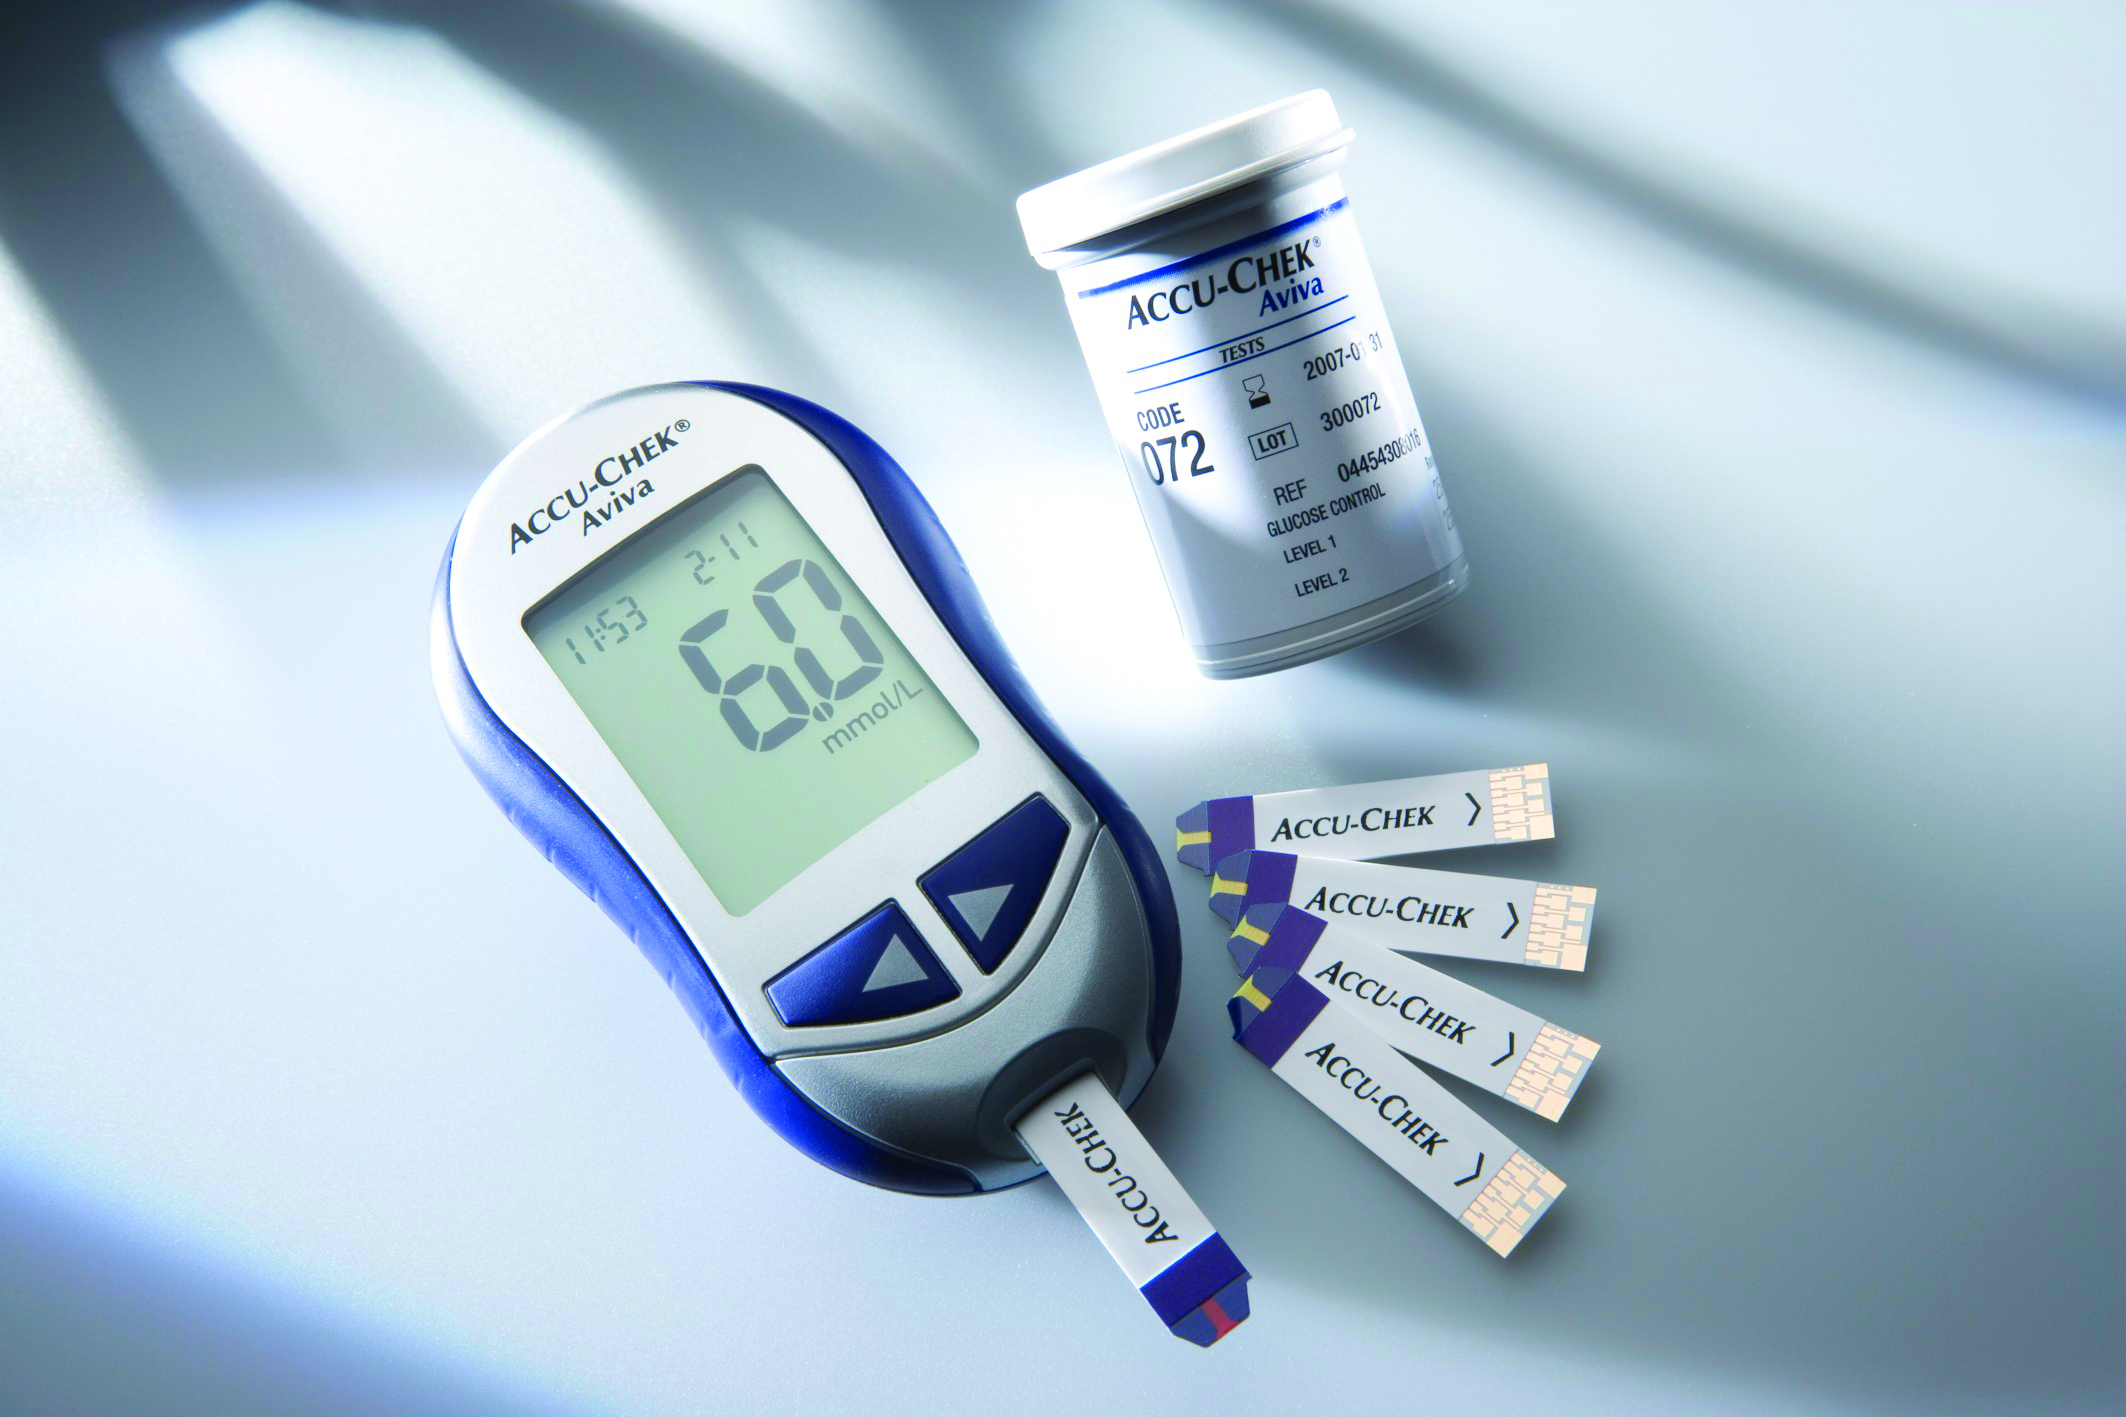 Тест есть ли диабет. Измерение глюкометра Глюкозы крови. Сахарный диабет прибор для измерения сахара в крови. Измерение уровня Глюкозы в крови глюкометром. Глюкометр измерение сахара в крови.